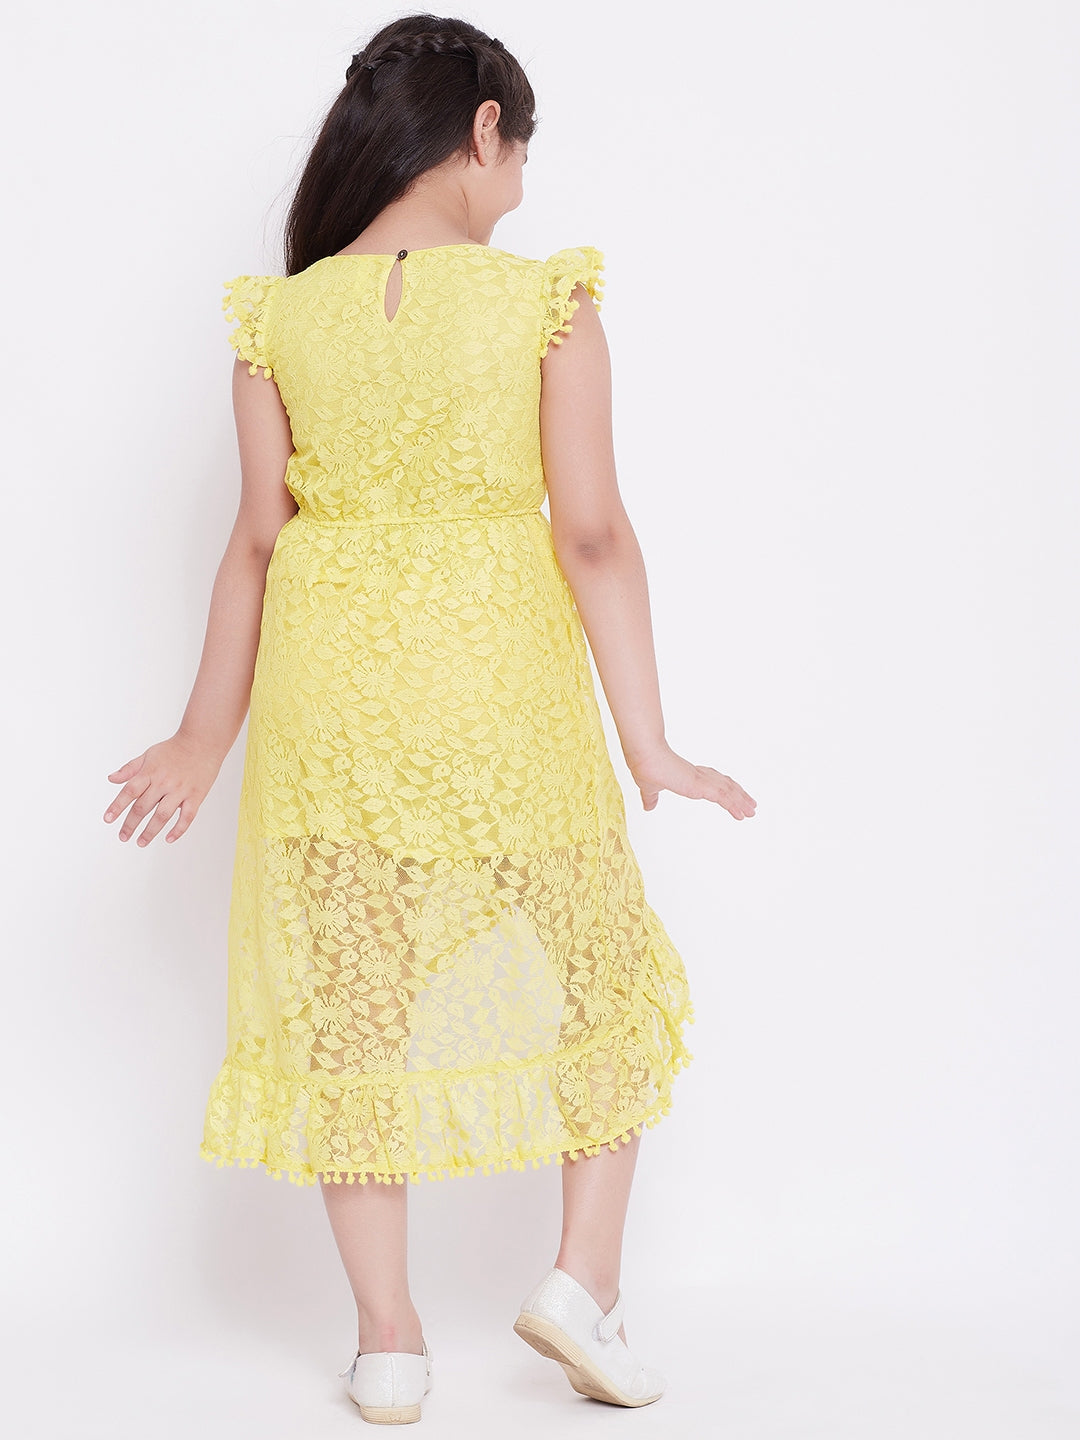 Girl's Printed Dress Yellow - StyloBug KIDS